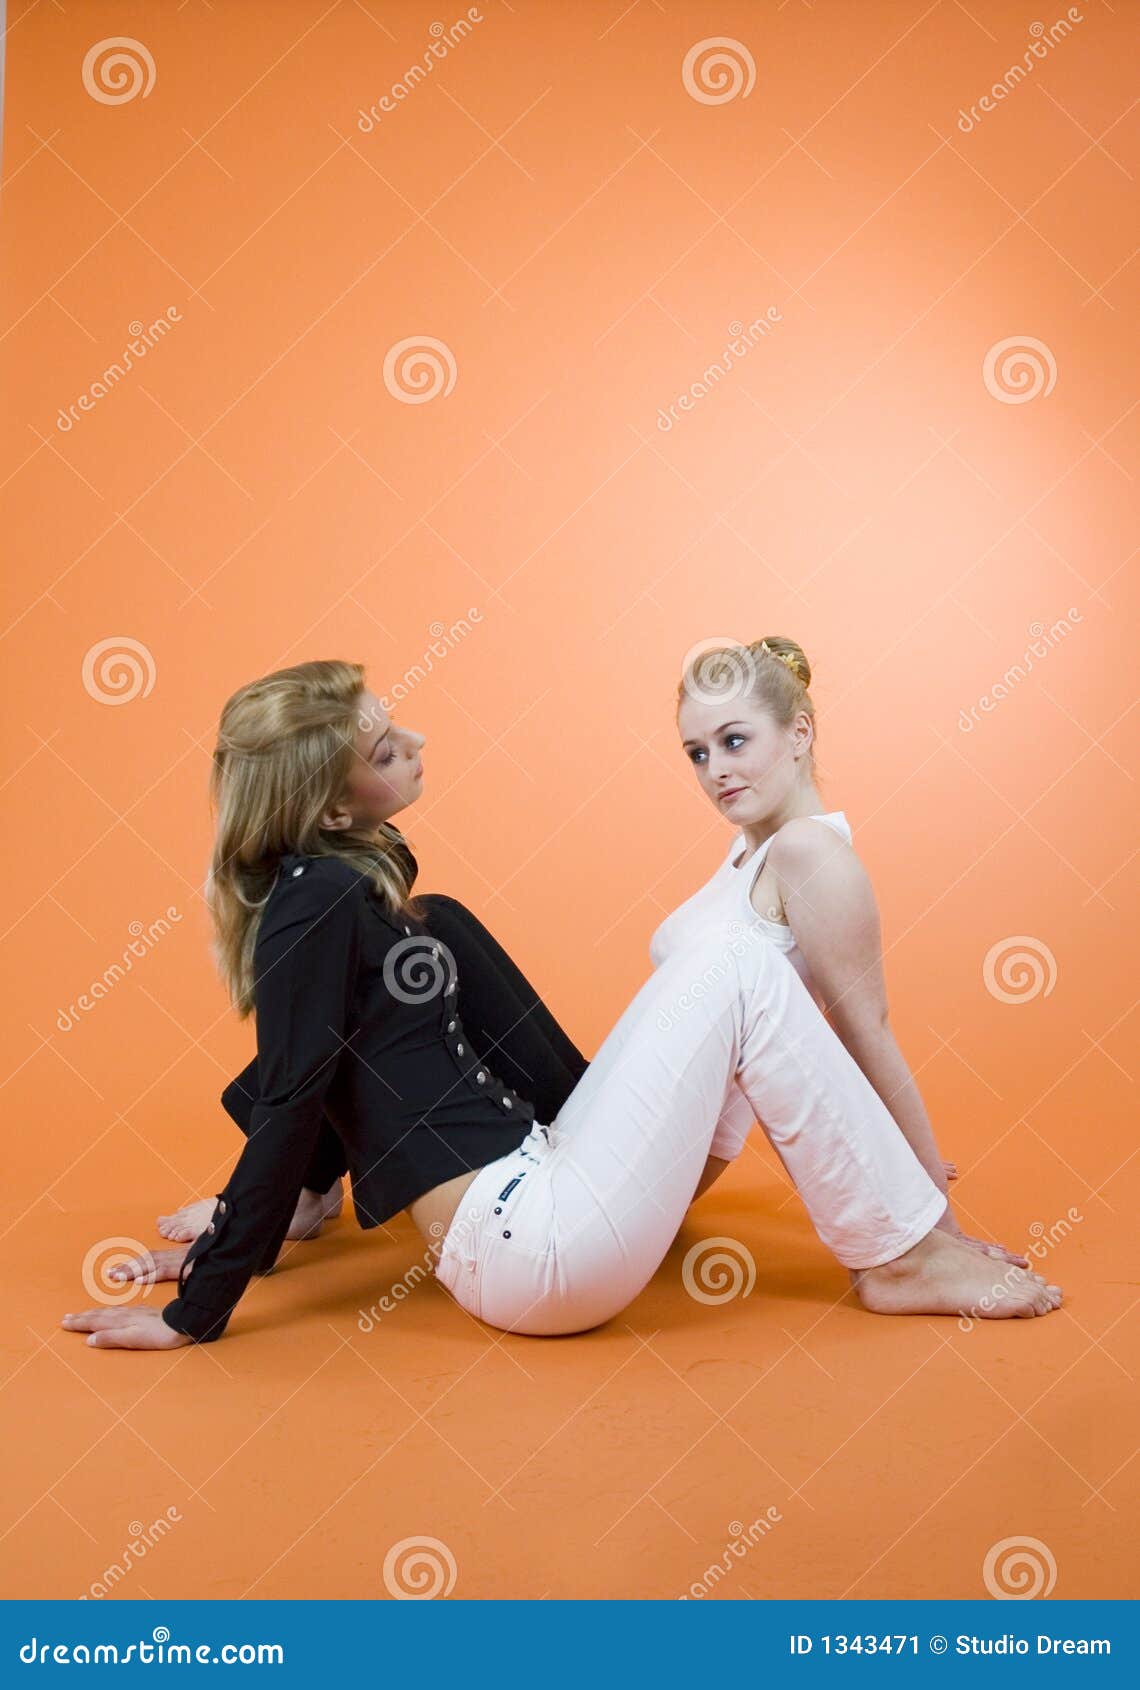 Divulgación de un secreto. Dos mujeres jovenes que se sientan en el suelo en direcciones opuestas, teniendo una conversación.